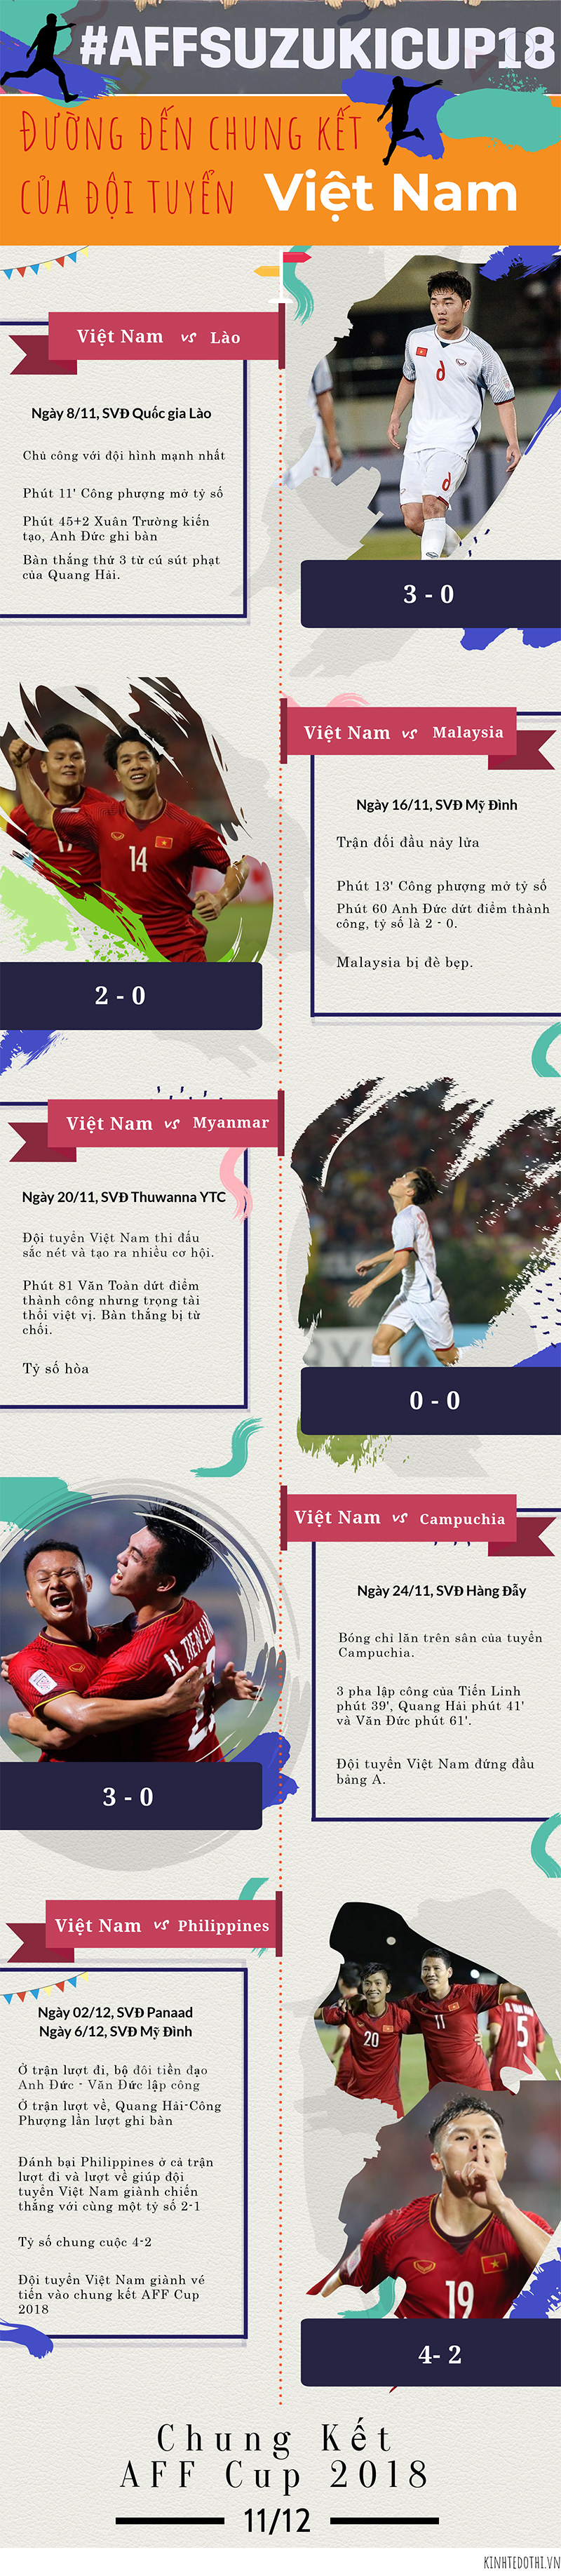 [Infographics] Đường đến chung kết của đội tuyển Việt Nam tại AFF Cup 2018 - Ảnh 1